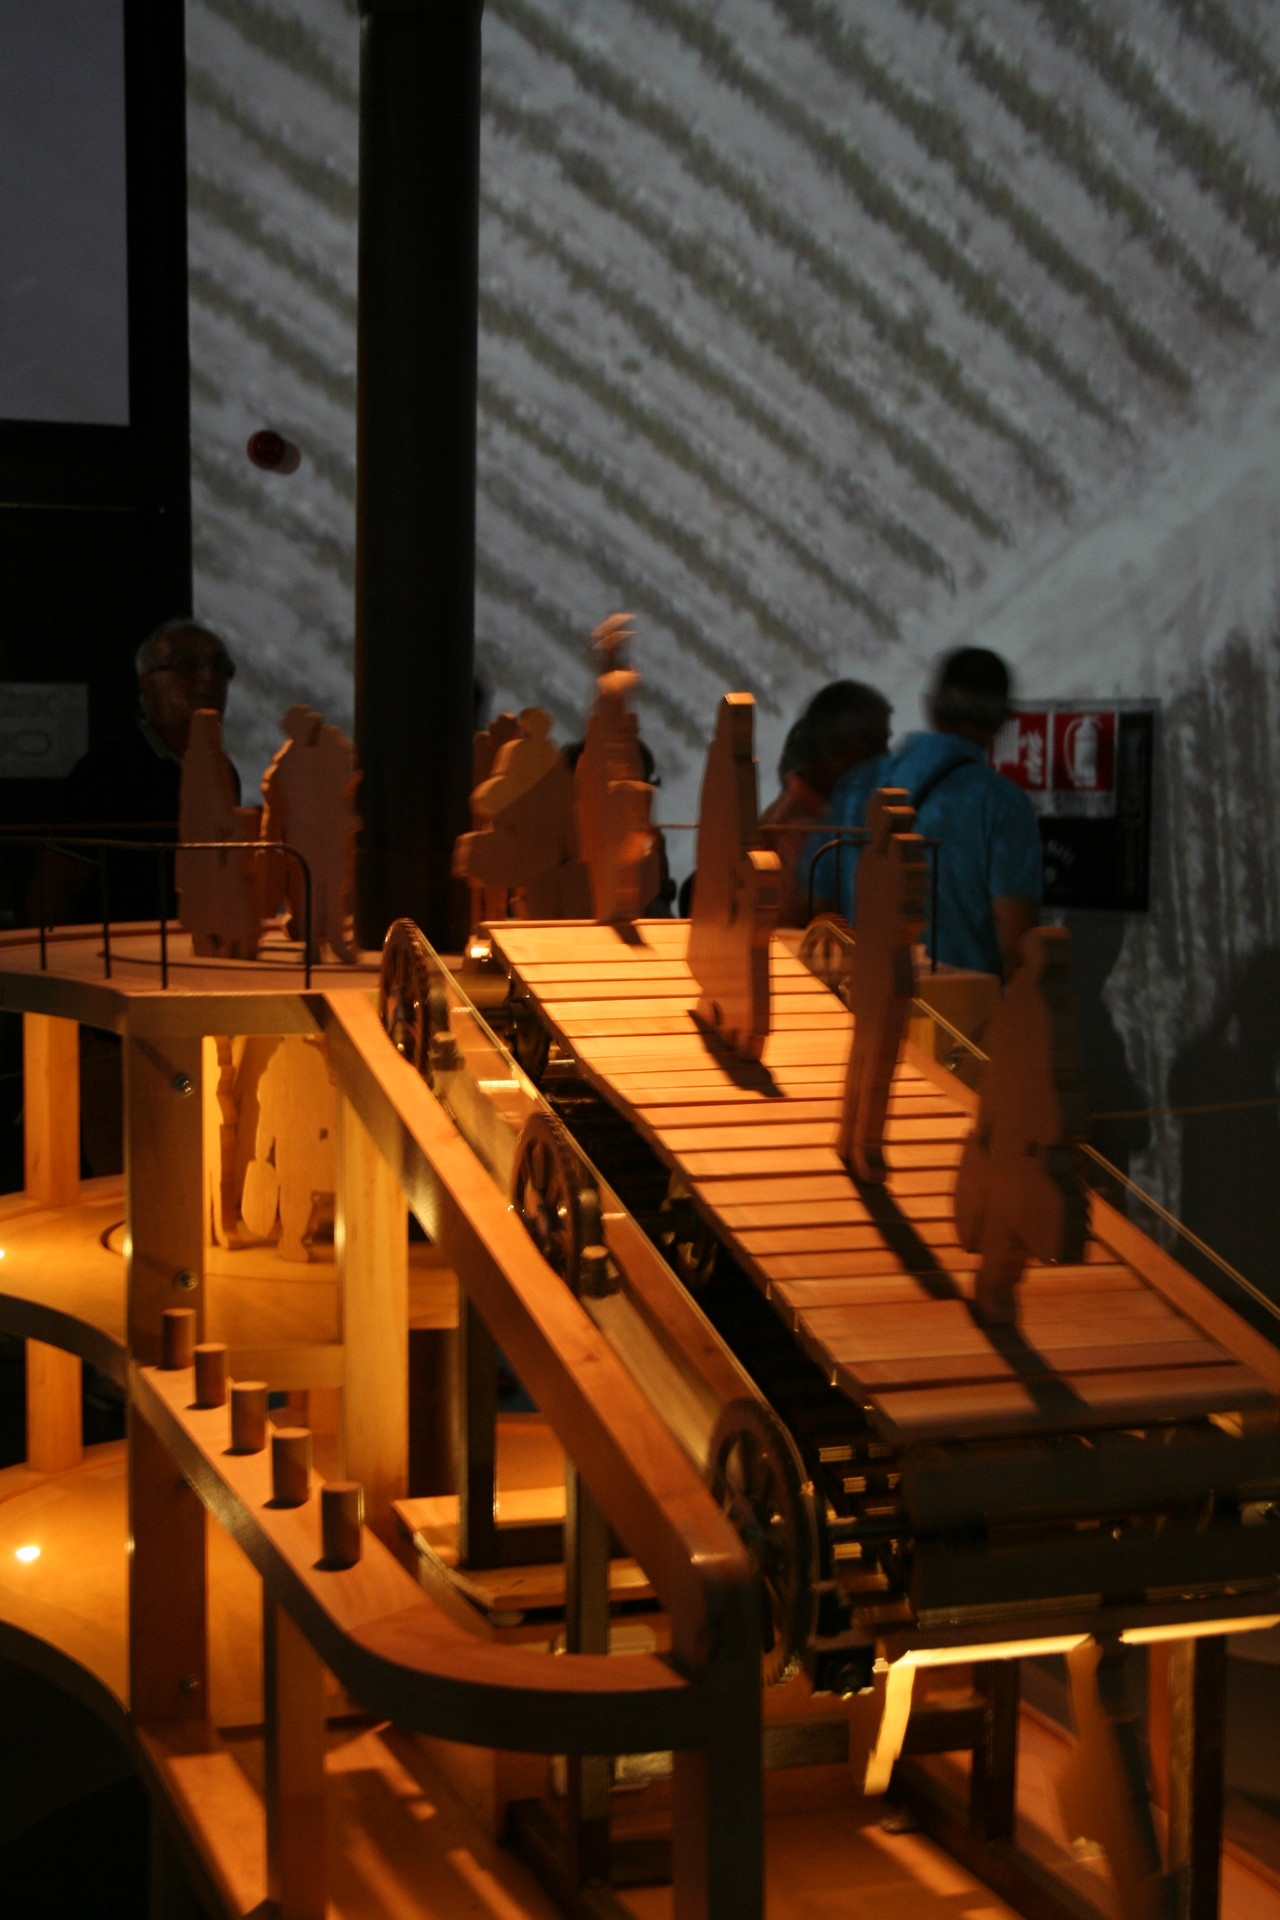 Installazione di legno raffigurante delle sagome di persone che si muovono su un nastro trasportatore anch'esso in legno